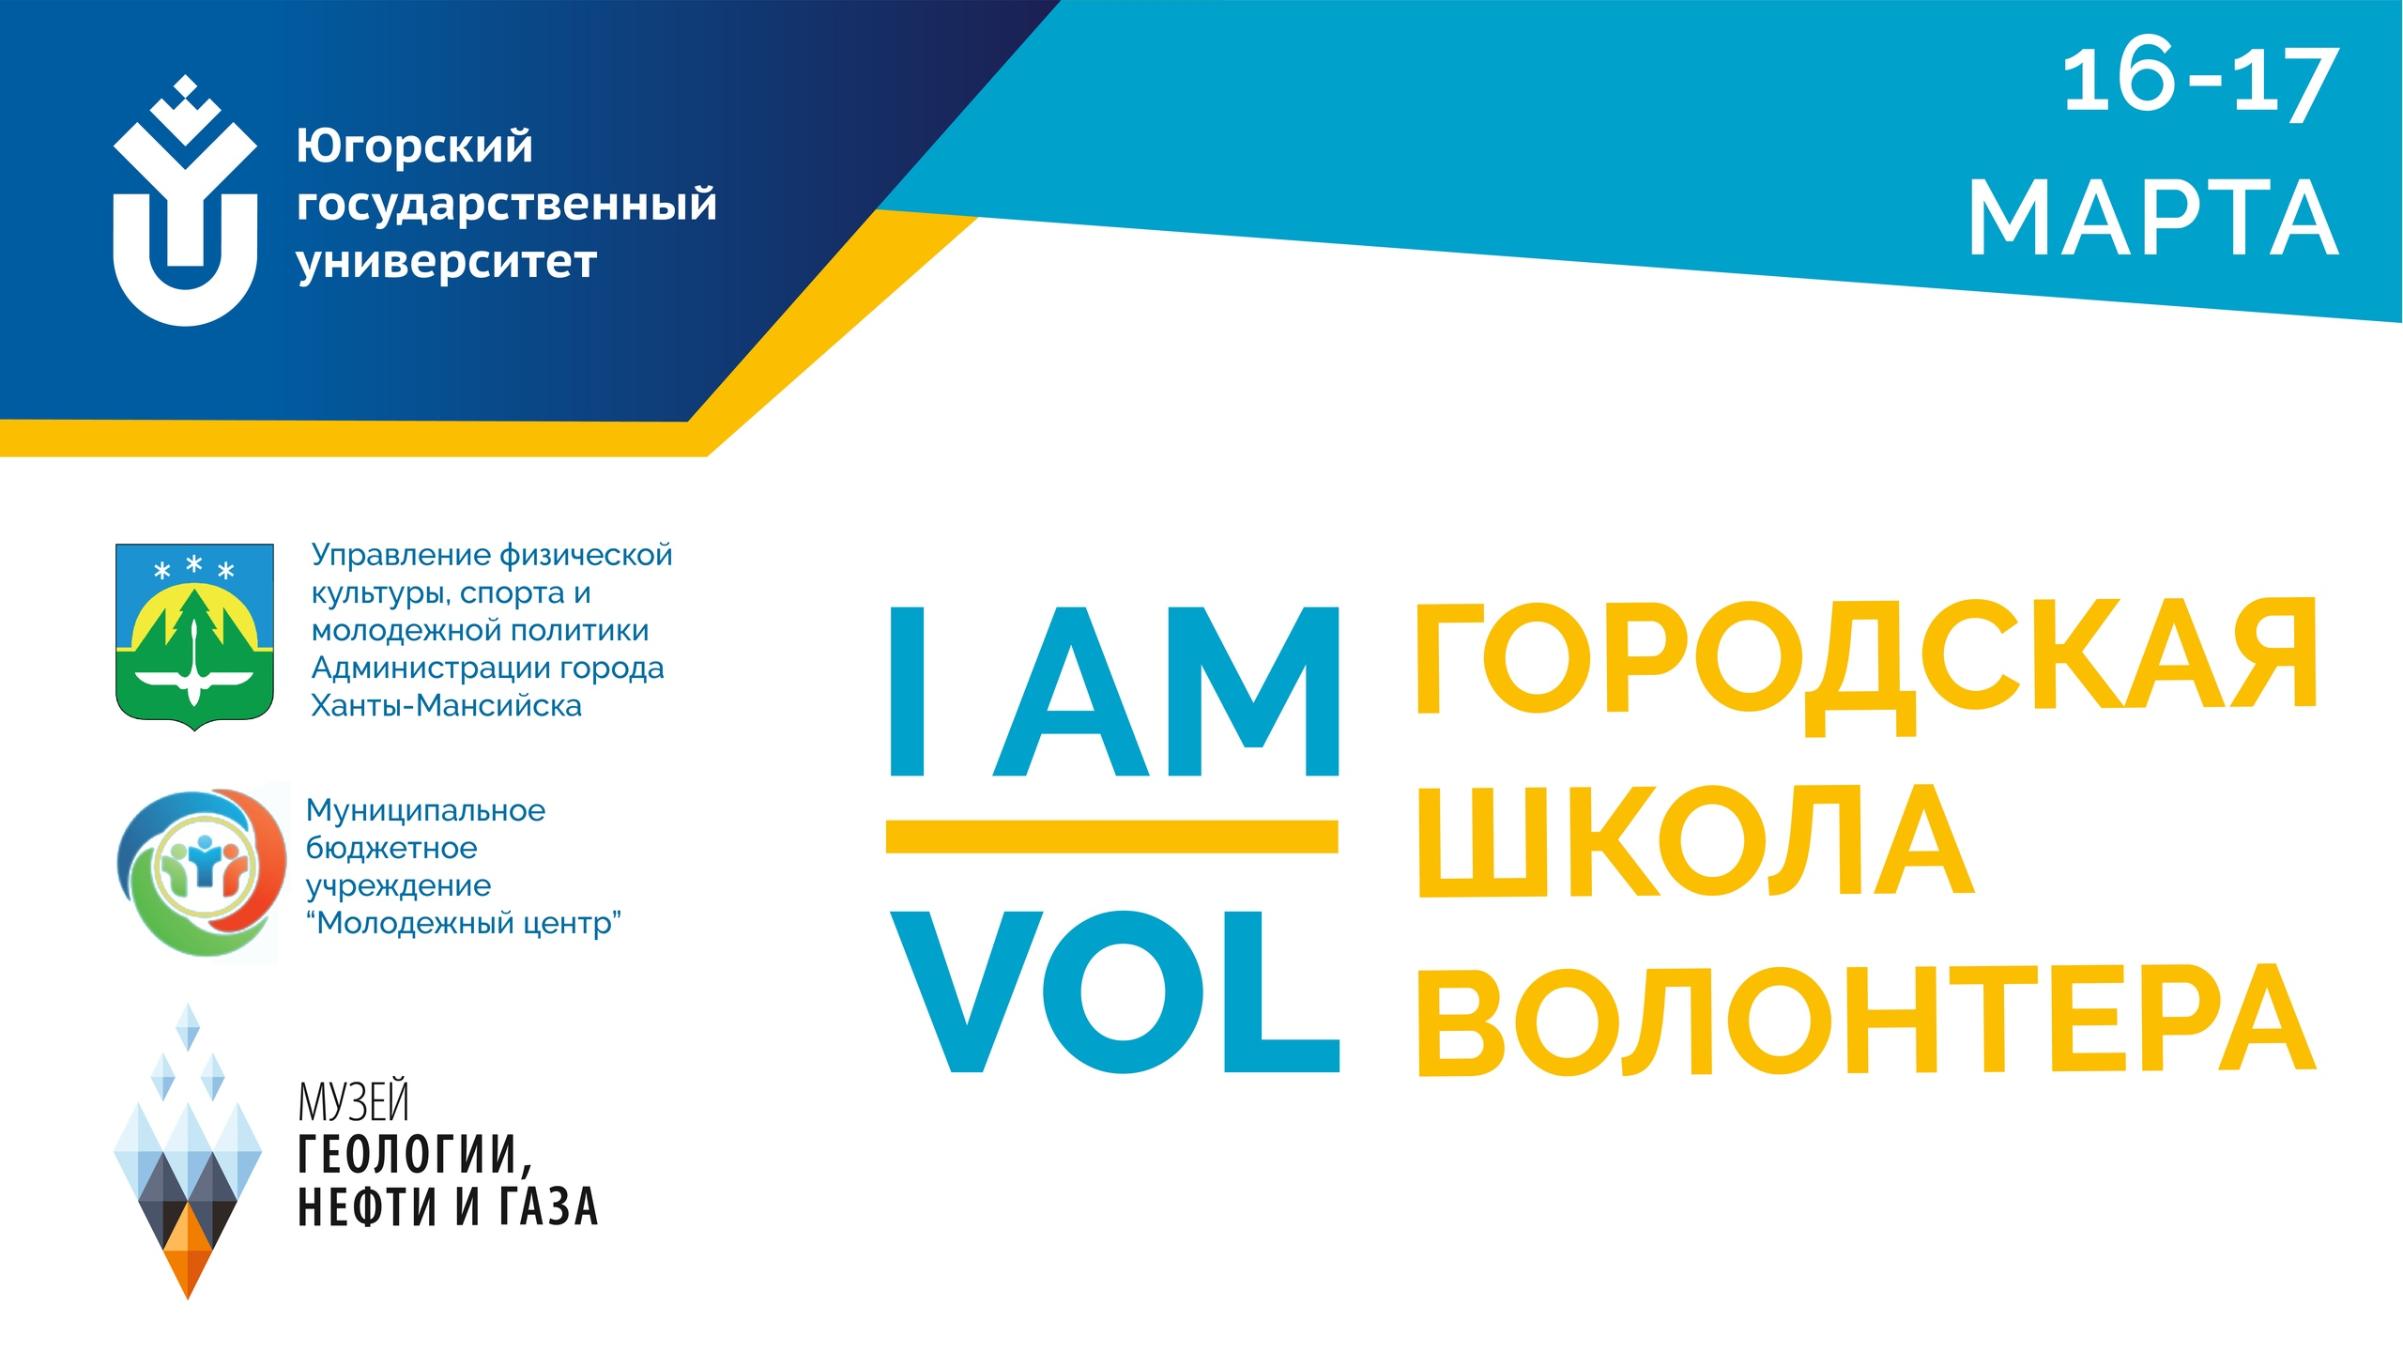 16-17 марта в Музее геологии, нефти и газа пройдет Городская школа волонтера «I am VOL». 